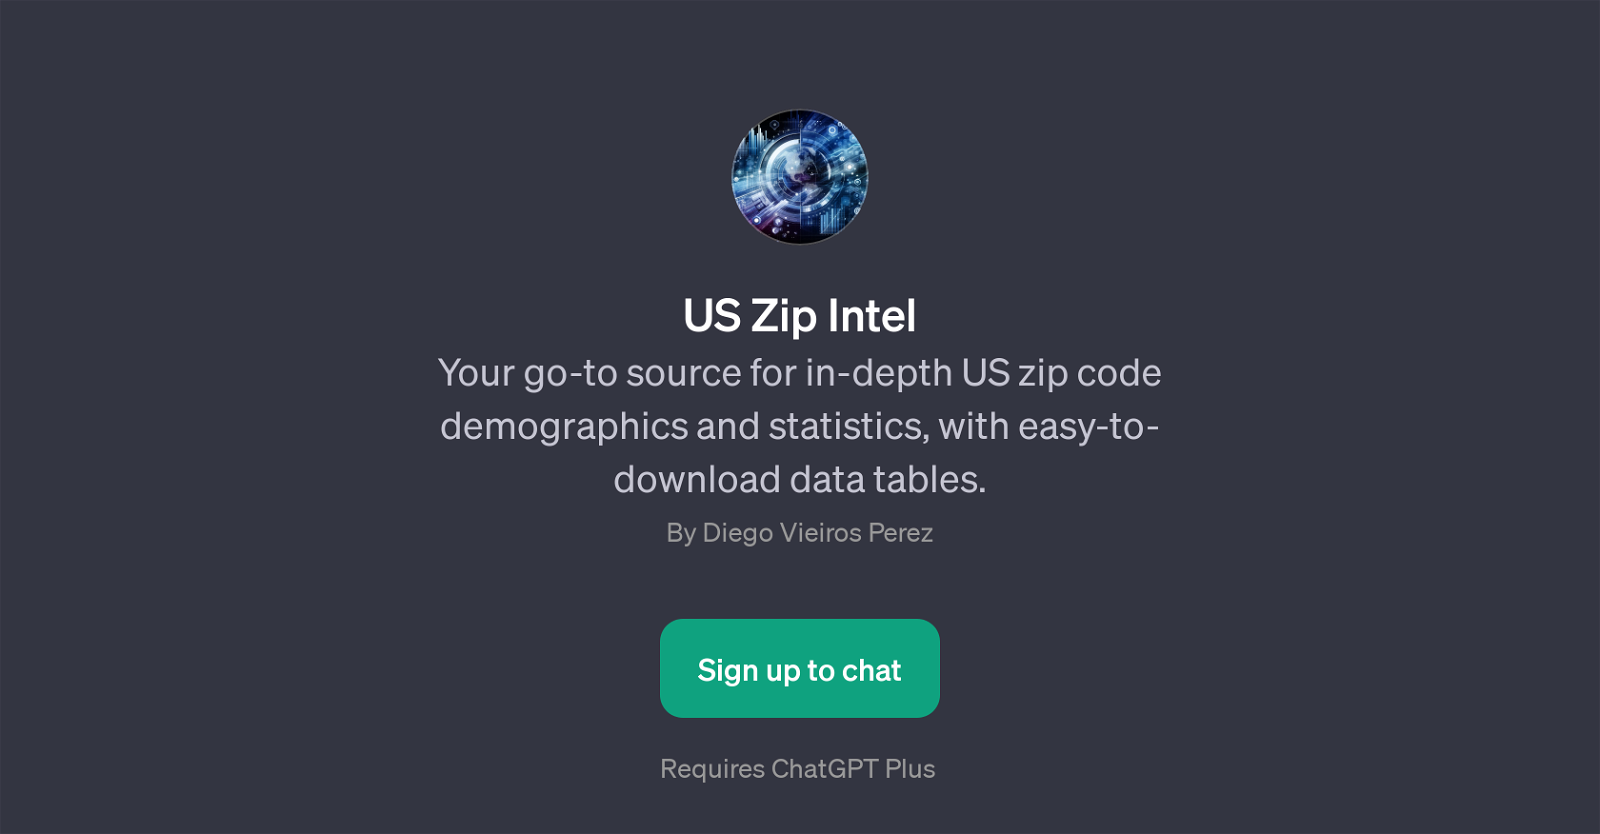 US Zip Intel website